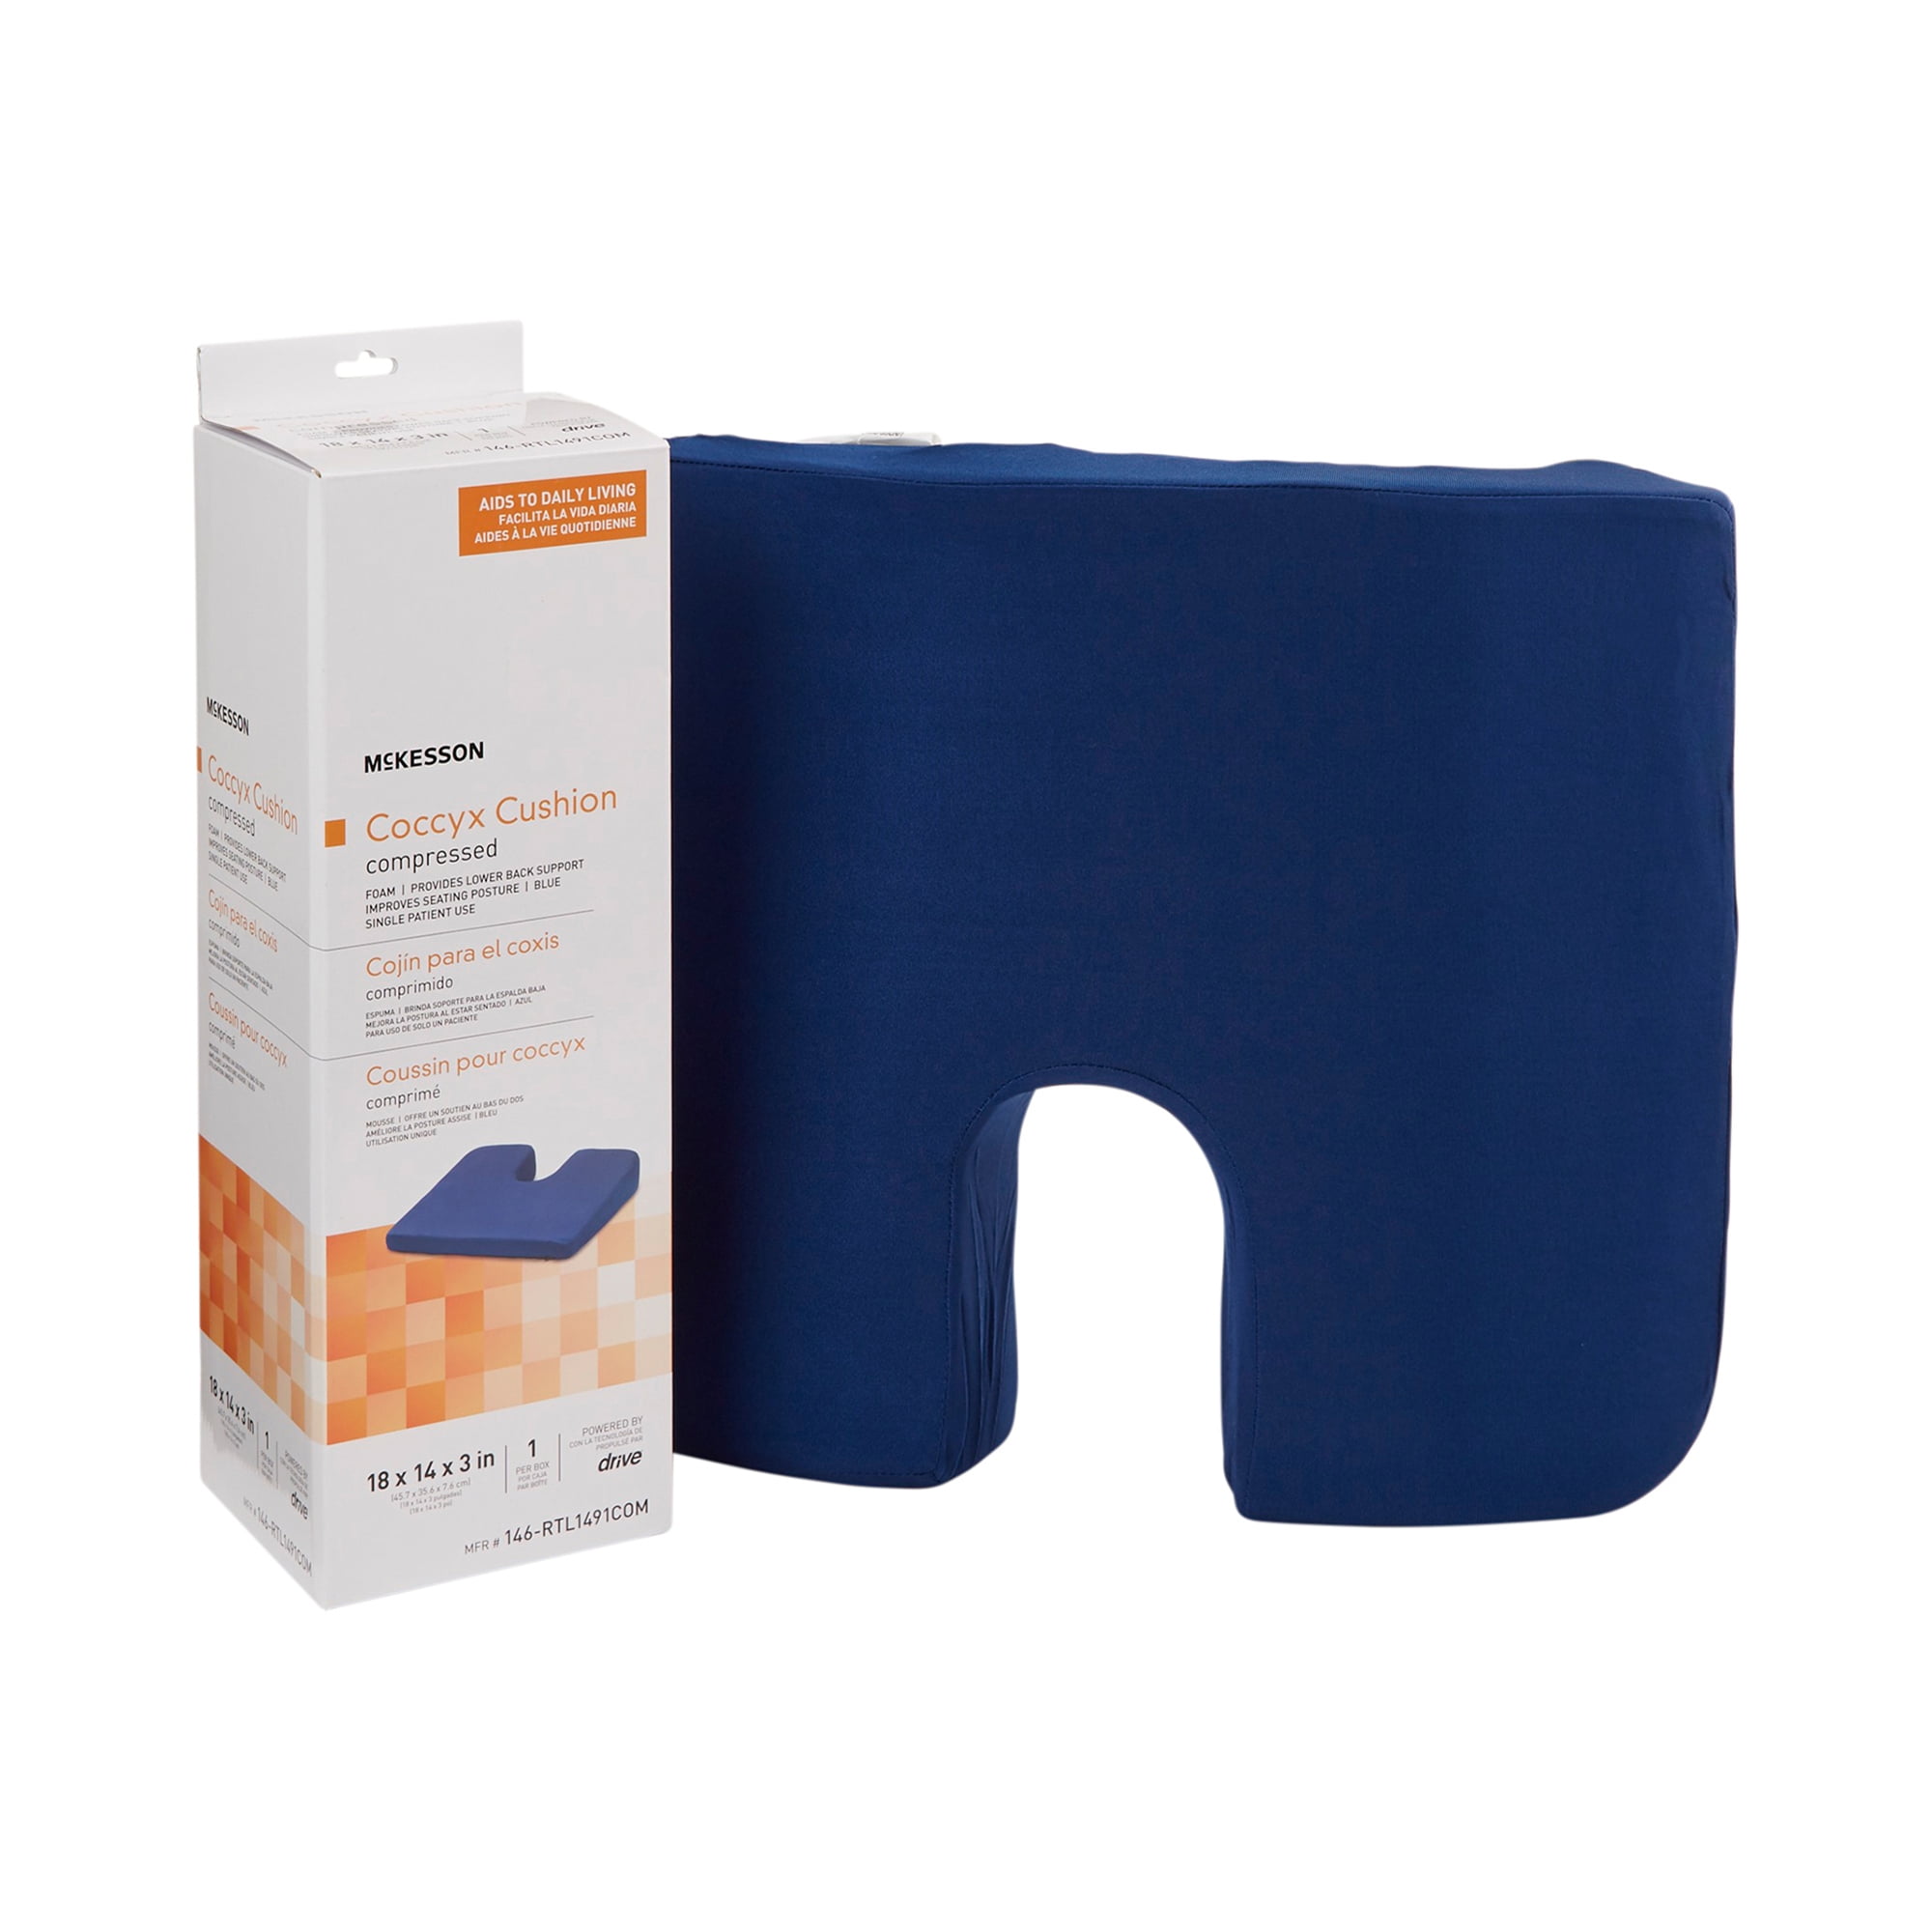 Coccyx Cushion - 18 x 16 x 3 Essential Medical N1002